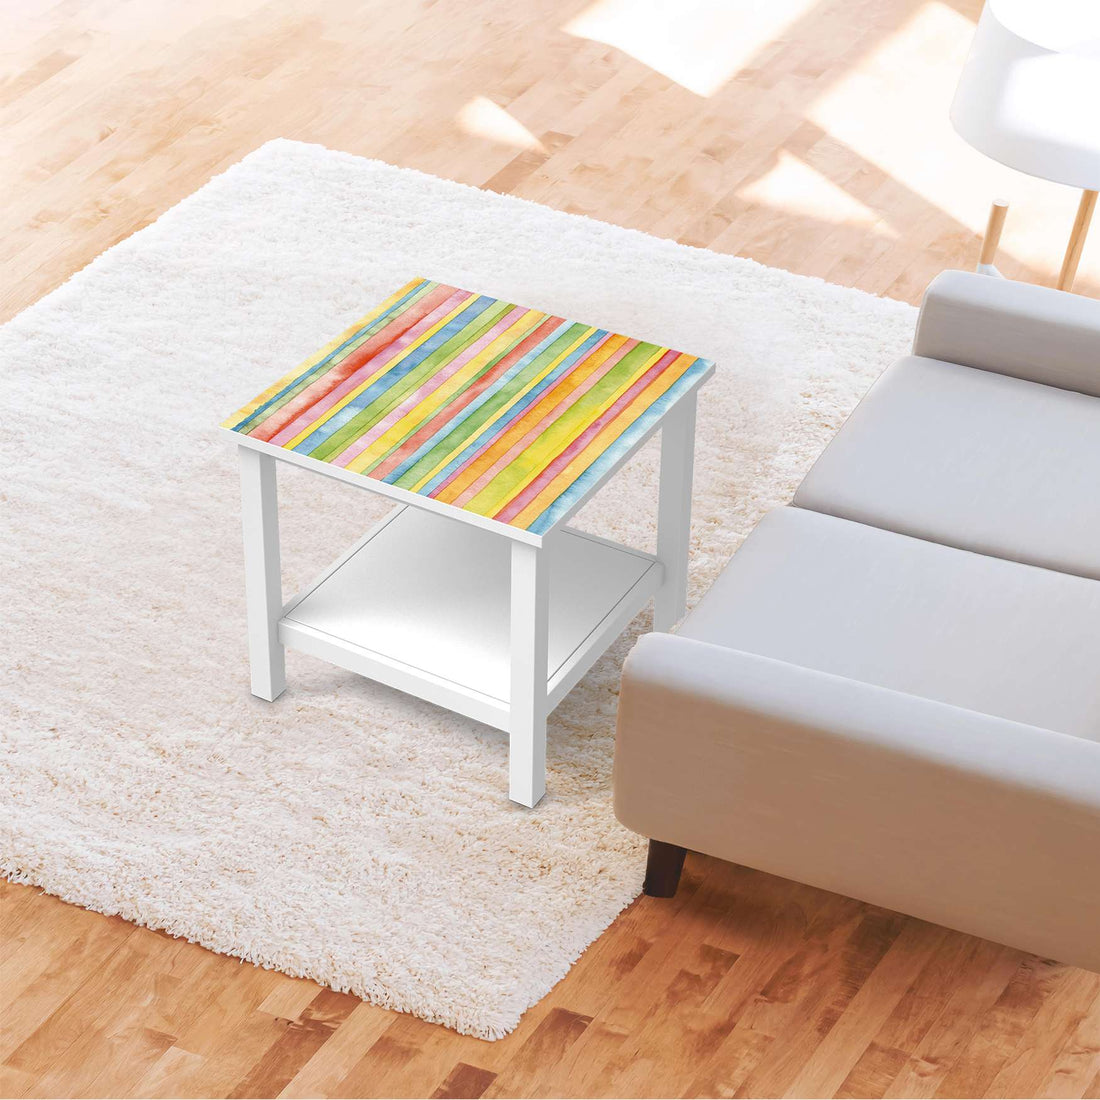 Möbel Klebefolie Watercolor Stripes - IKEA Hemnes Beistelltisch 55x55 cm - Wohnzimmer